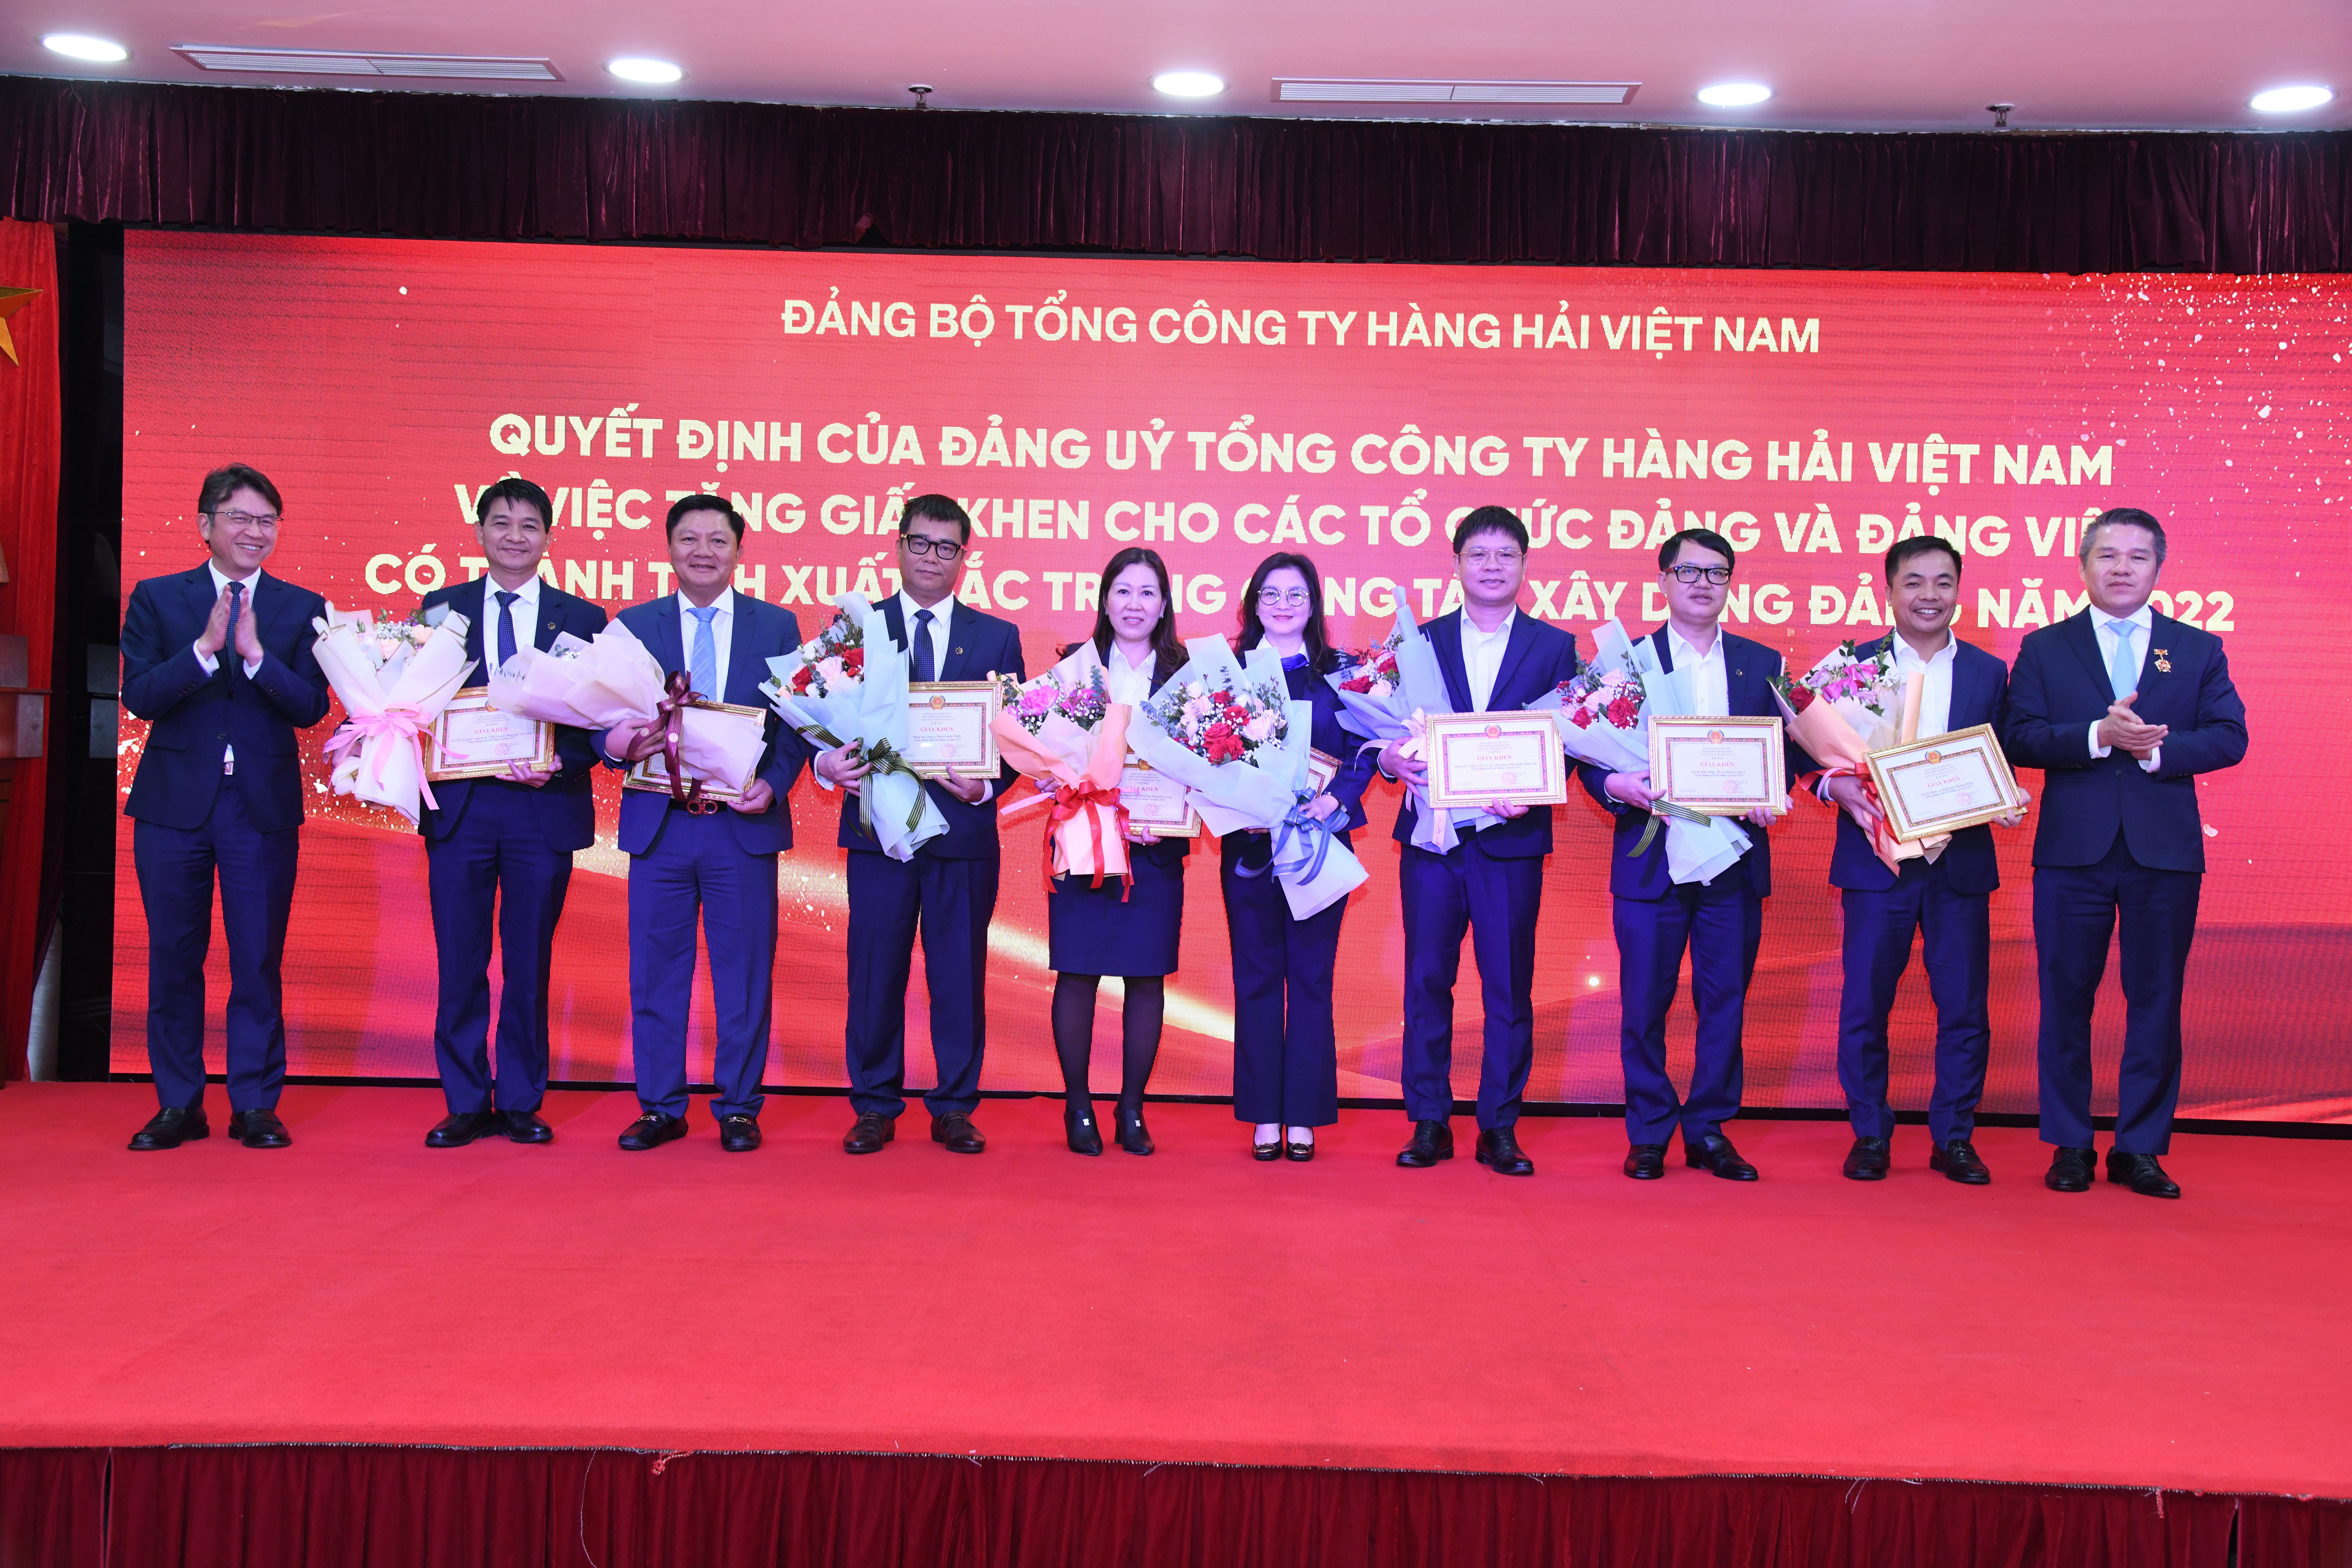 Đảng uỷ Tổng công ty Hàng hải Việt Nam trao tặng Giấy khen cho 8 thể và 20 cá nhân hoàn thành xuất sắc nhiệm vụ.